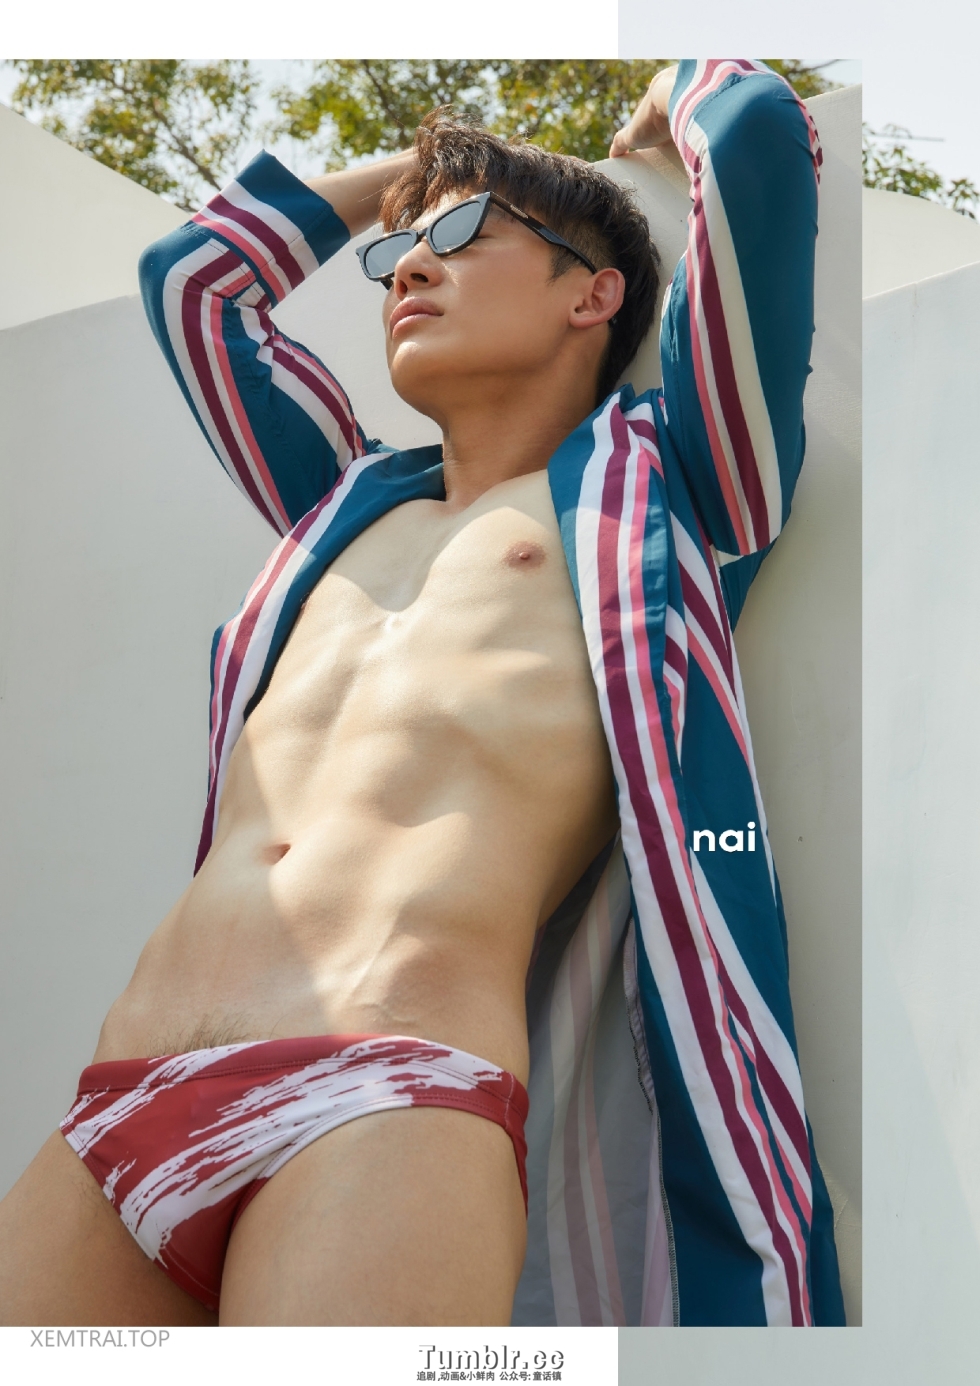 泰帅辣！！！奶白肌 Yong Tai 的不同内裤秀写真！！！|  138P！ tumblr.cc独家上线！！！ 赞助VIP 见全部